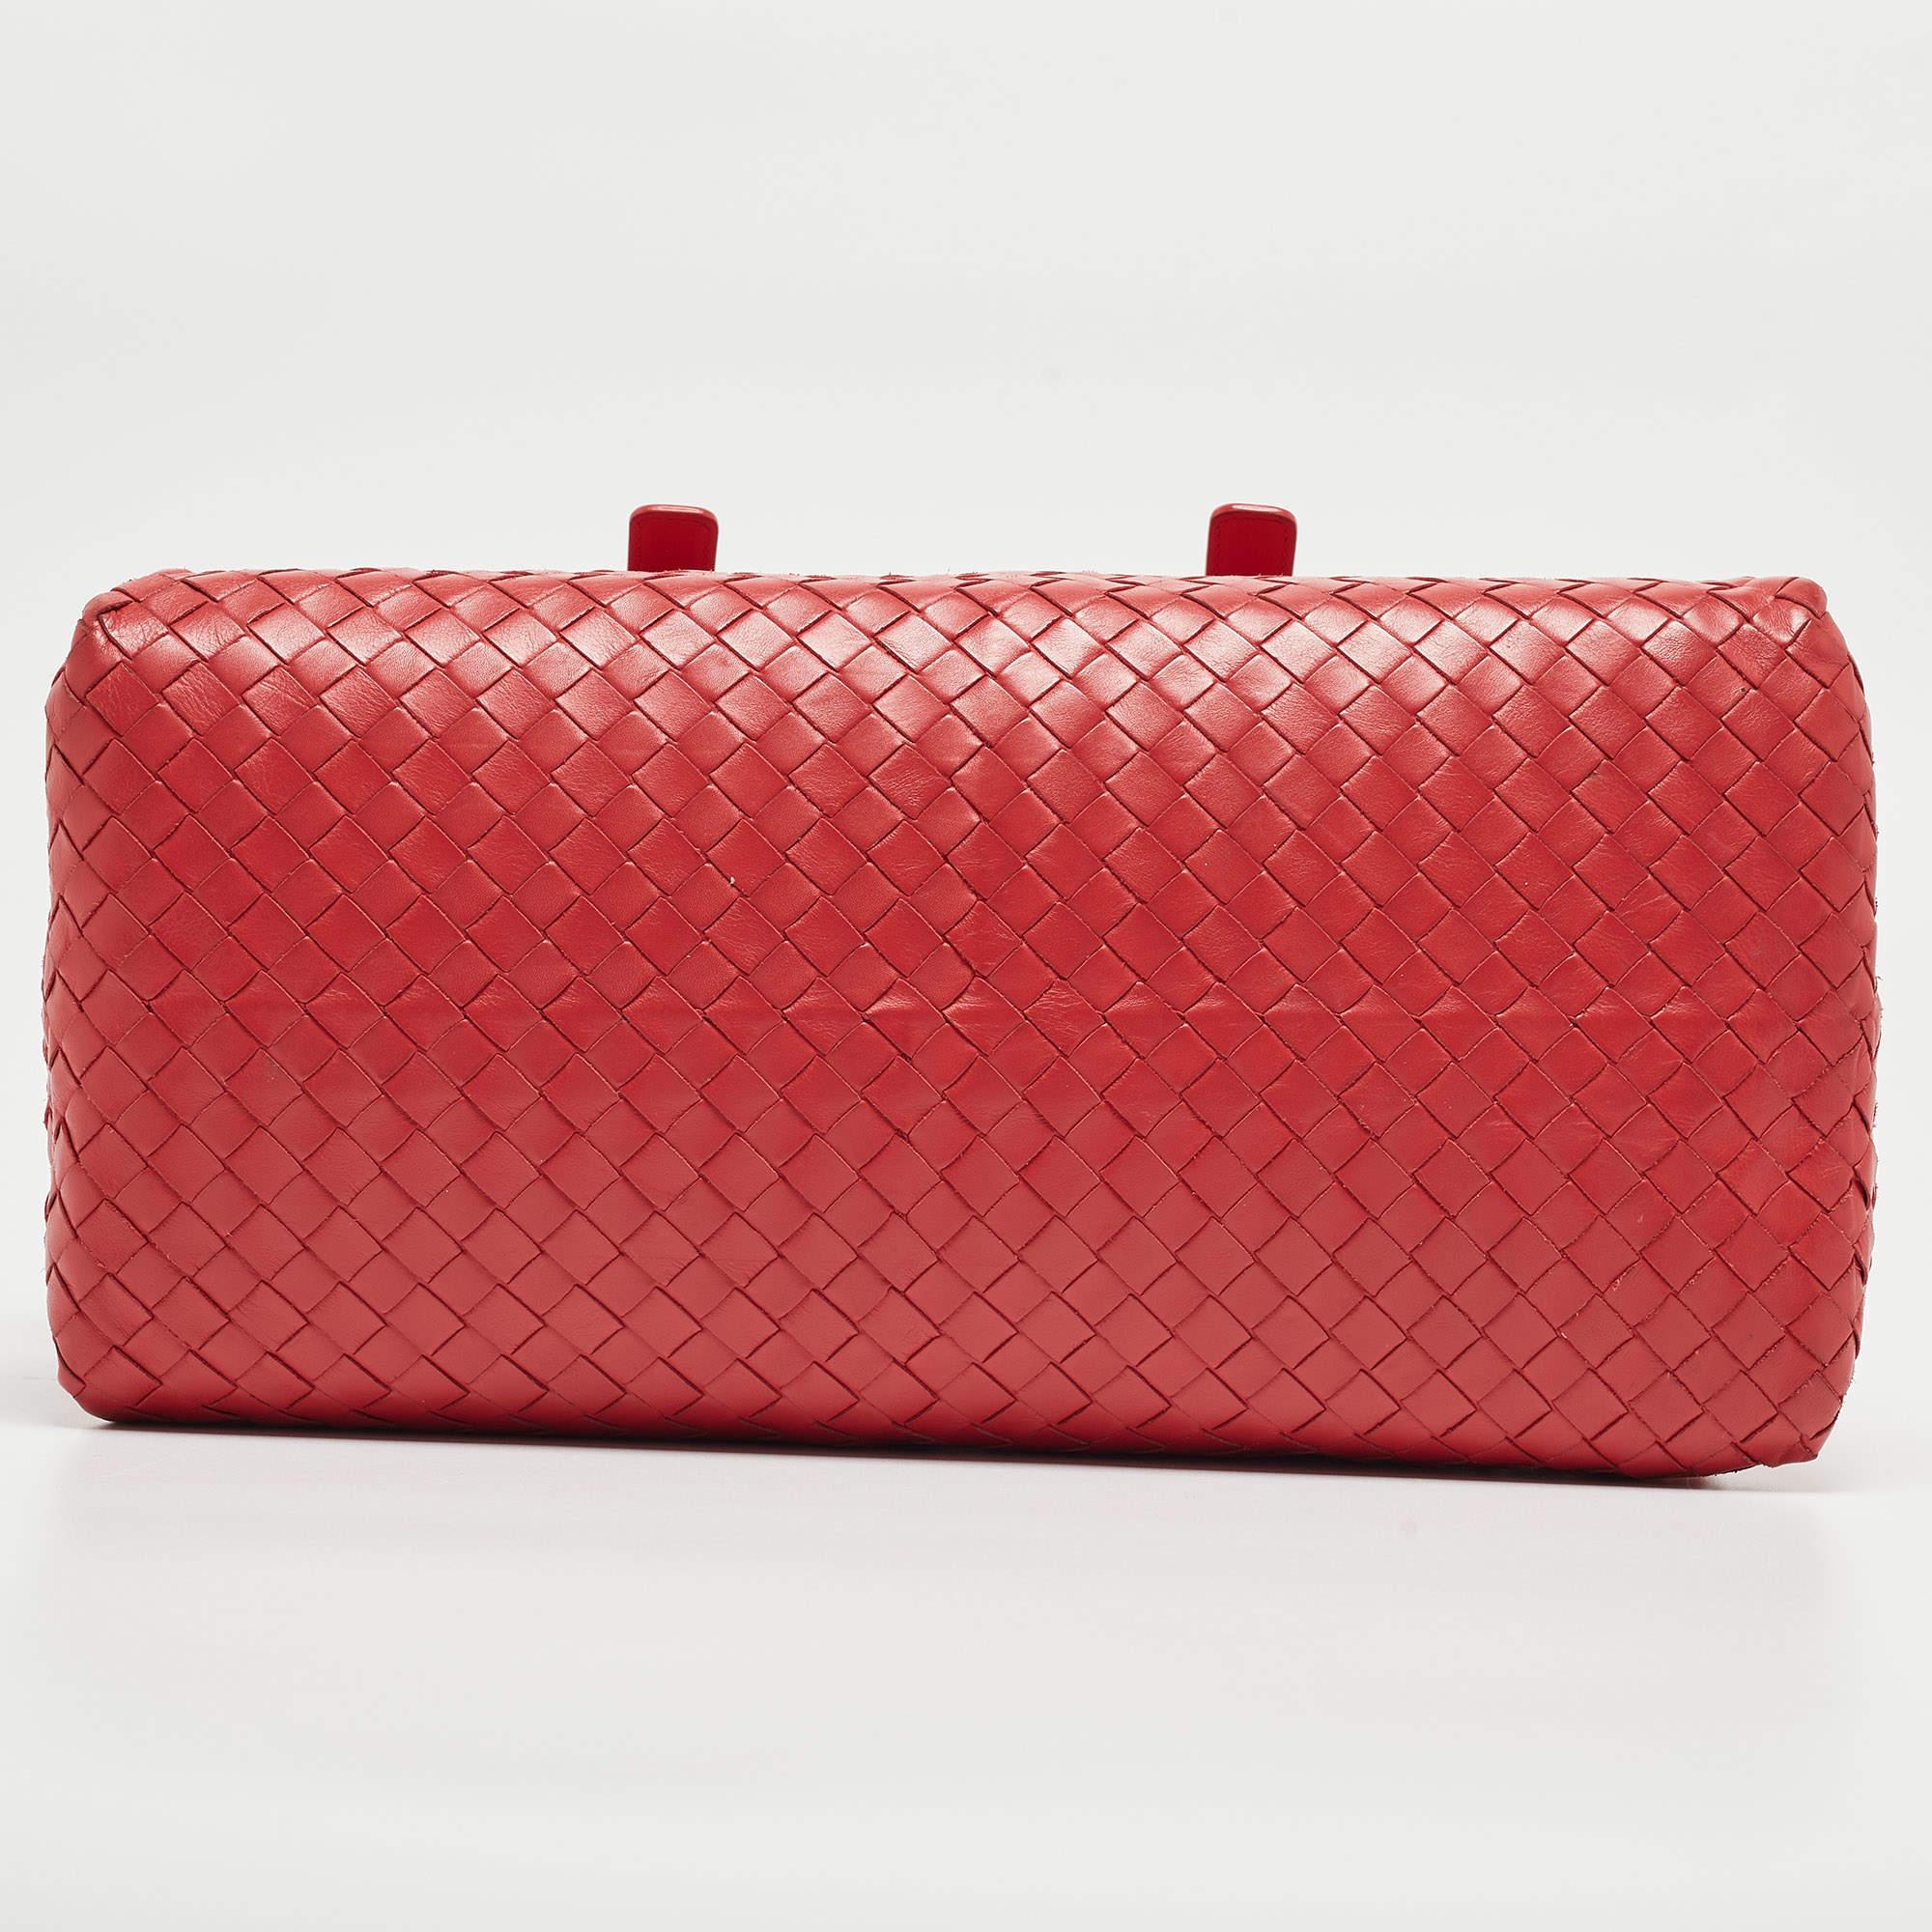 Bottega Veneta Red Intrecciato Leather New Boston Bag In Good Condition For Sale In Dubai, Al Qouz 2